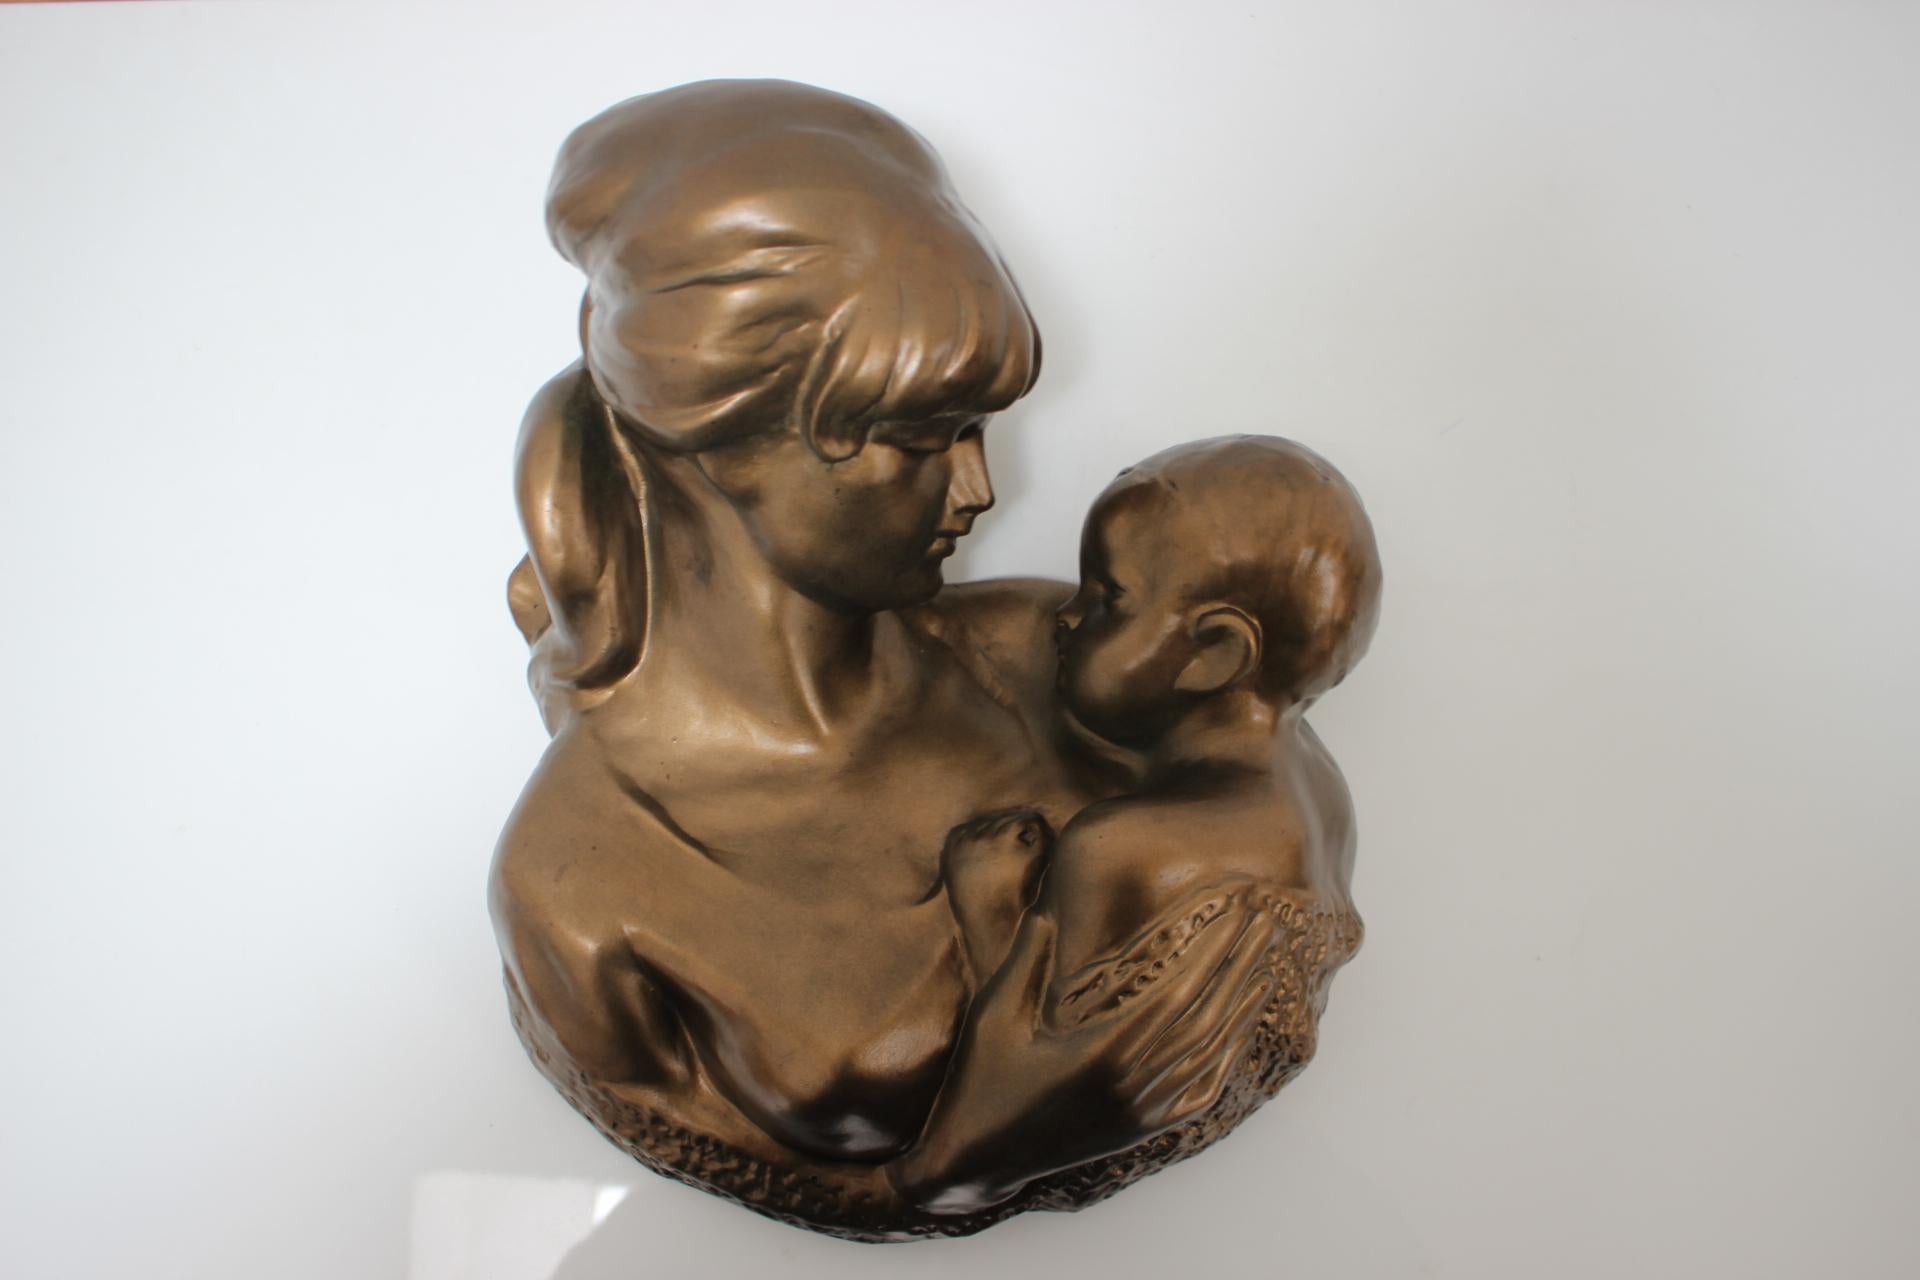 Fabriqué en Tchécoslovaquie
Fabriqué en laiton, céramique
Polis
Bohumil Kokrda Sculpteur académique
État d'origine
l'art décoratif.